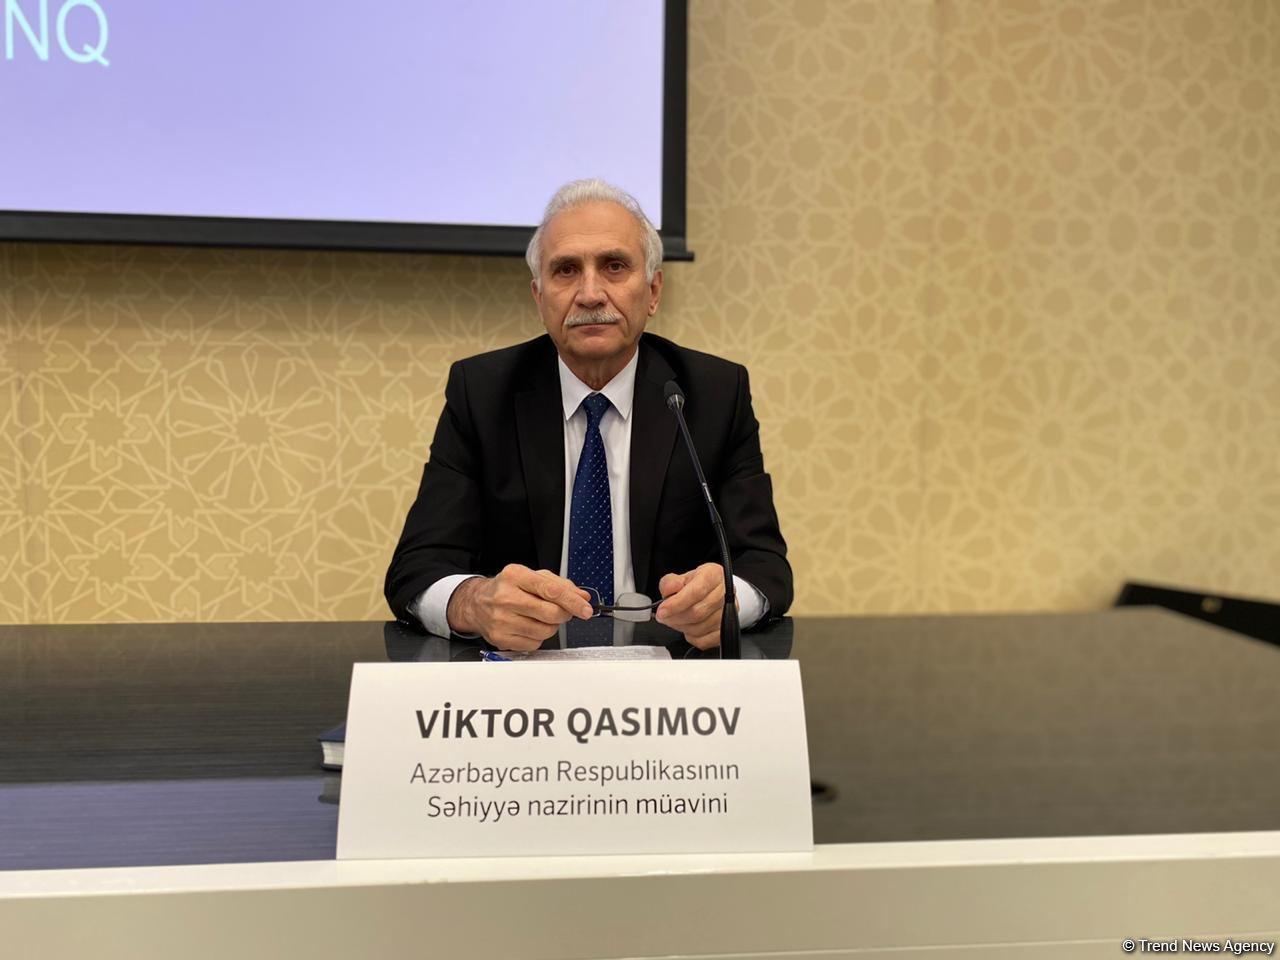 Azerbaijan holding talks on TURKOVAC COVID-19 vaccine trials - ministry